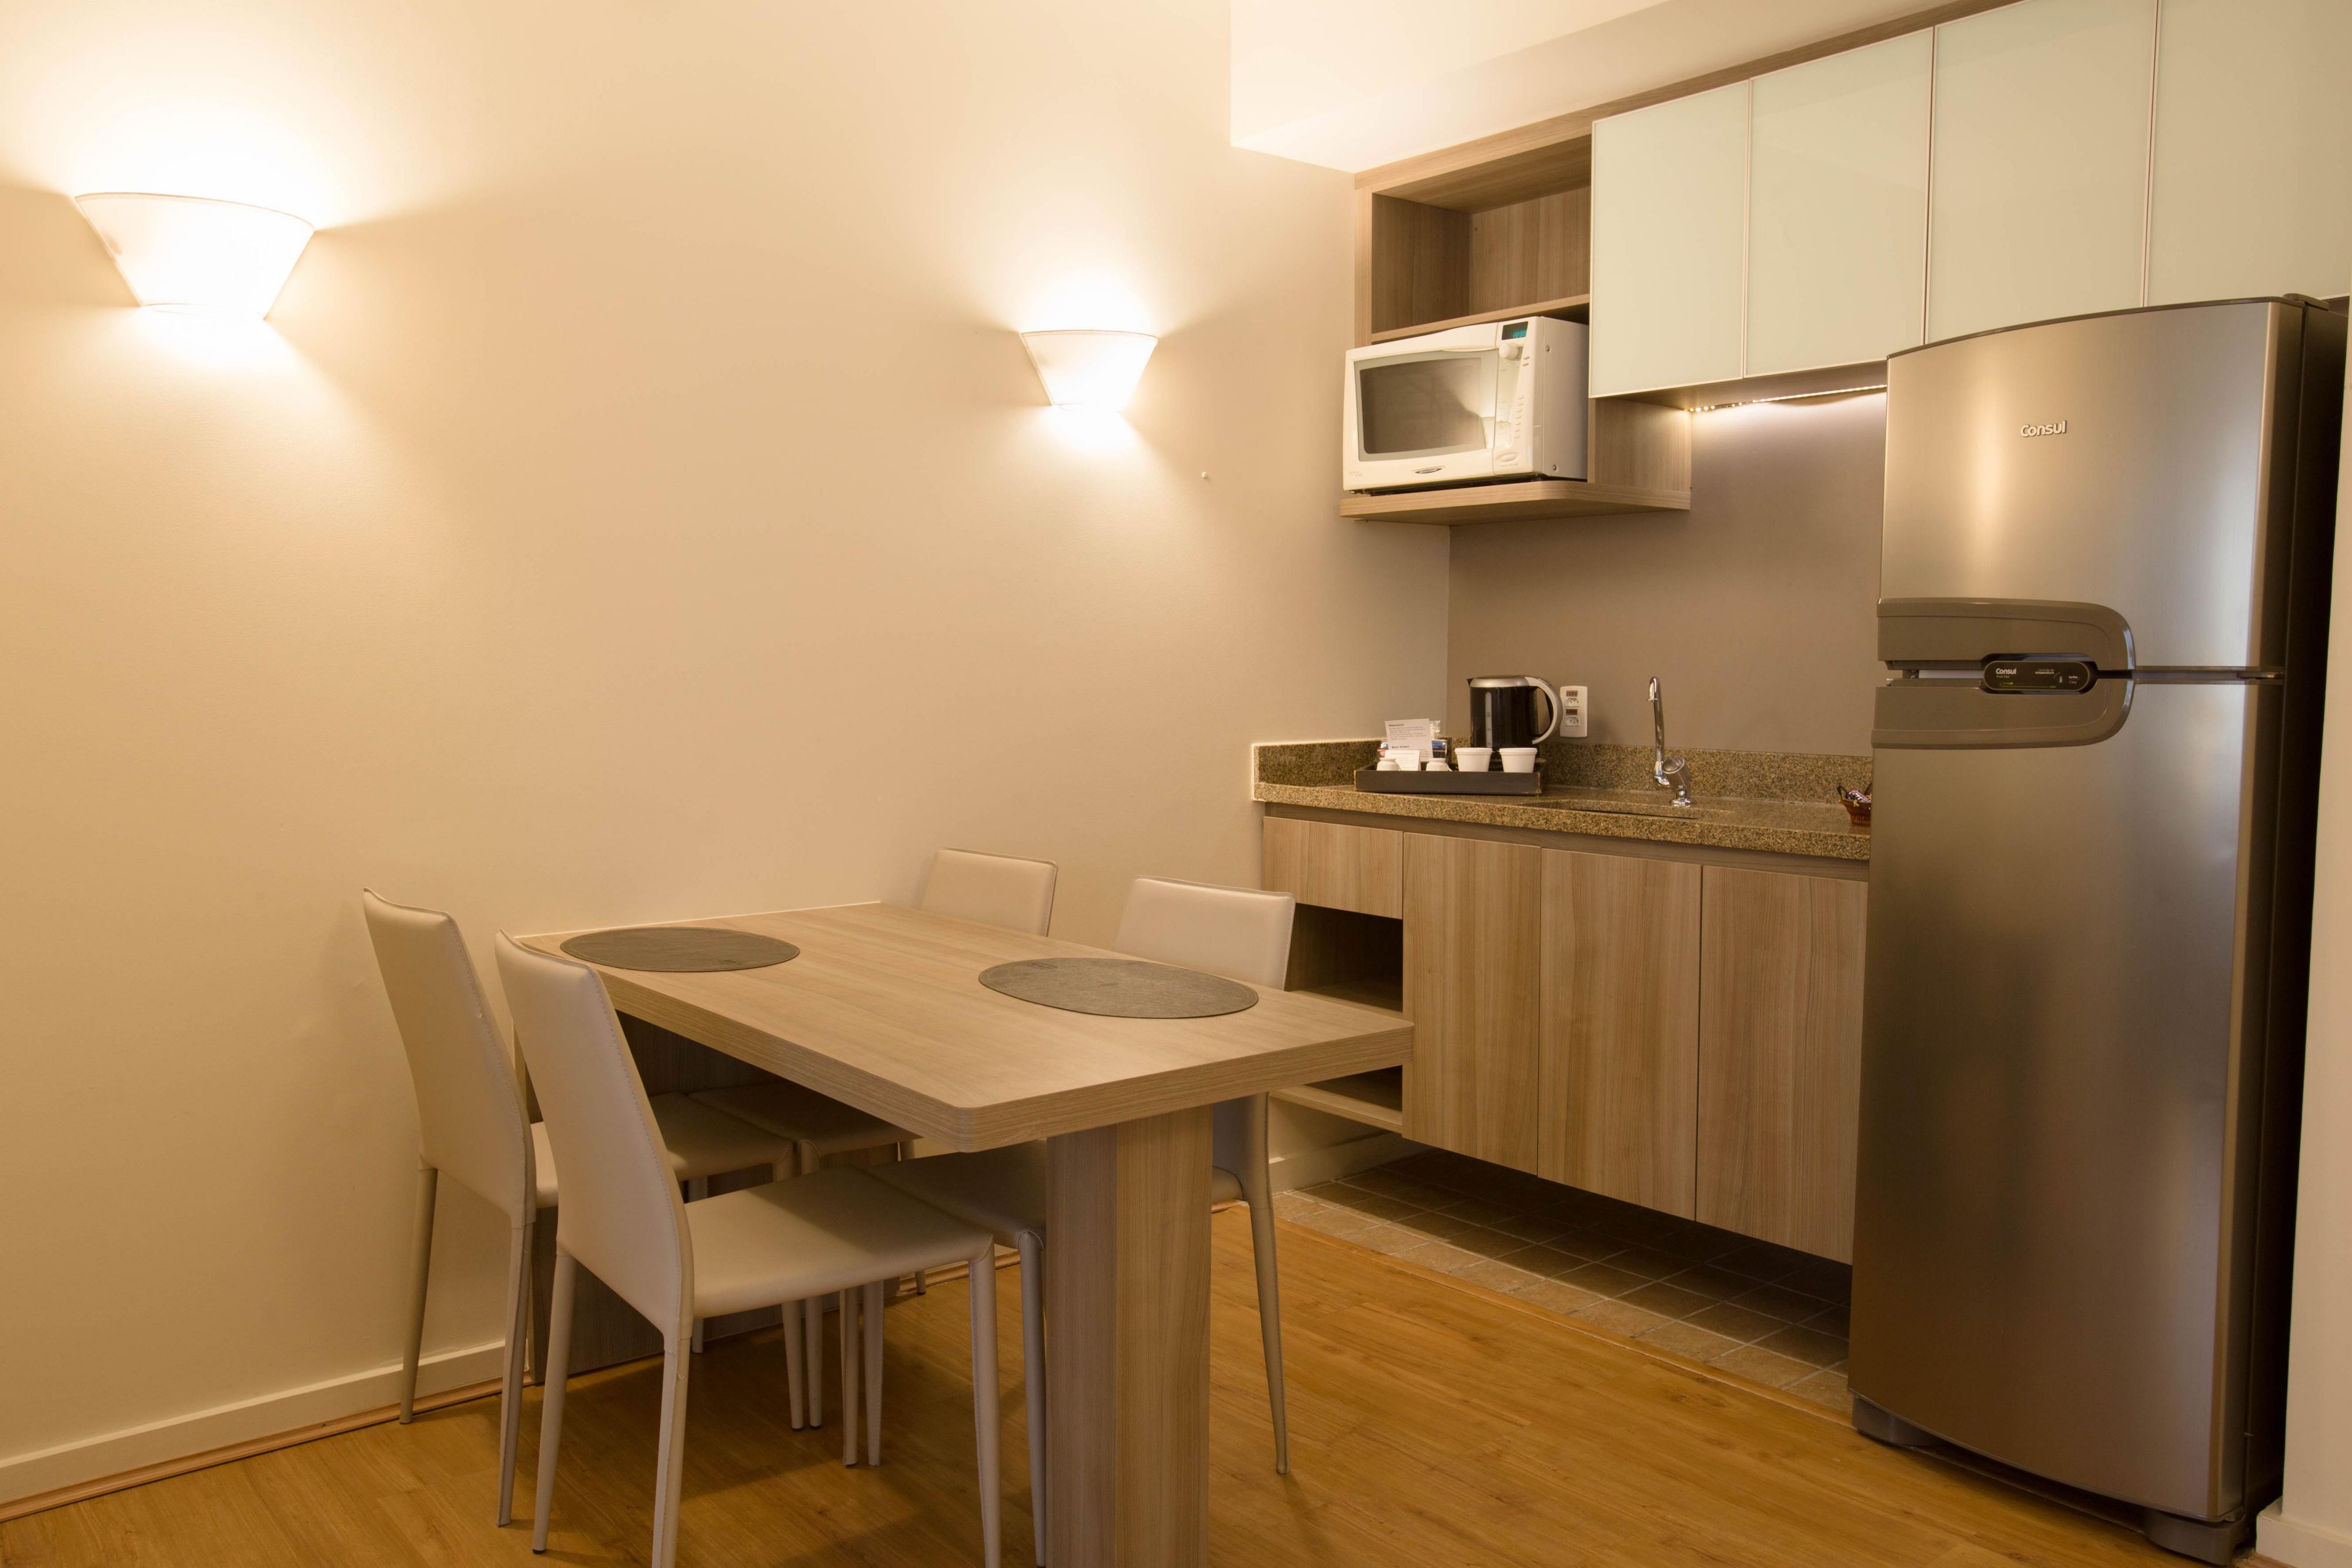 Una suite especial de 80 m2 compuesta por 02 habitaciones (una king size y una twin), cocina americana equipada y sala de estar